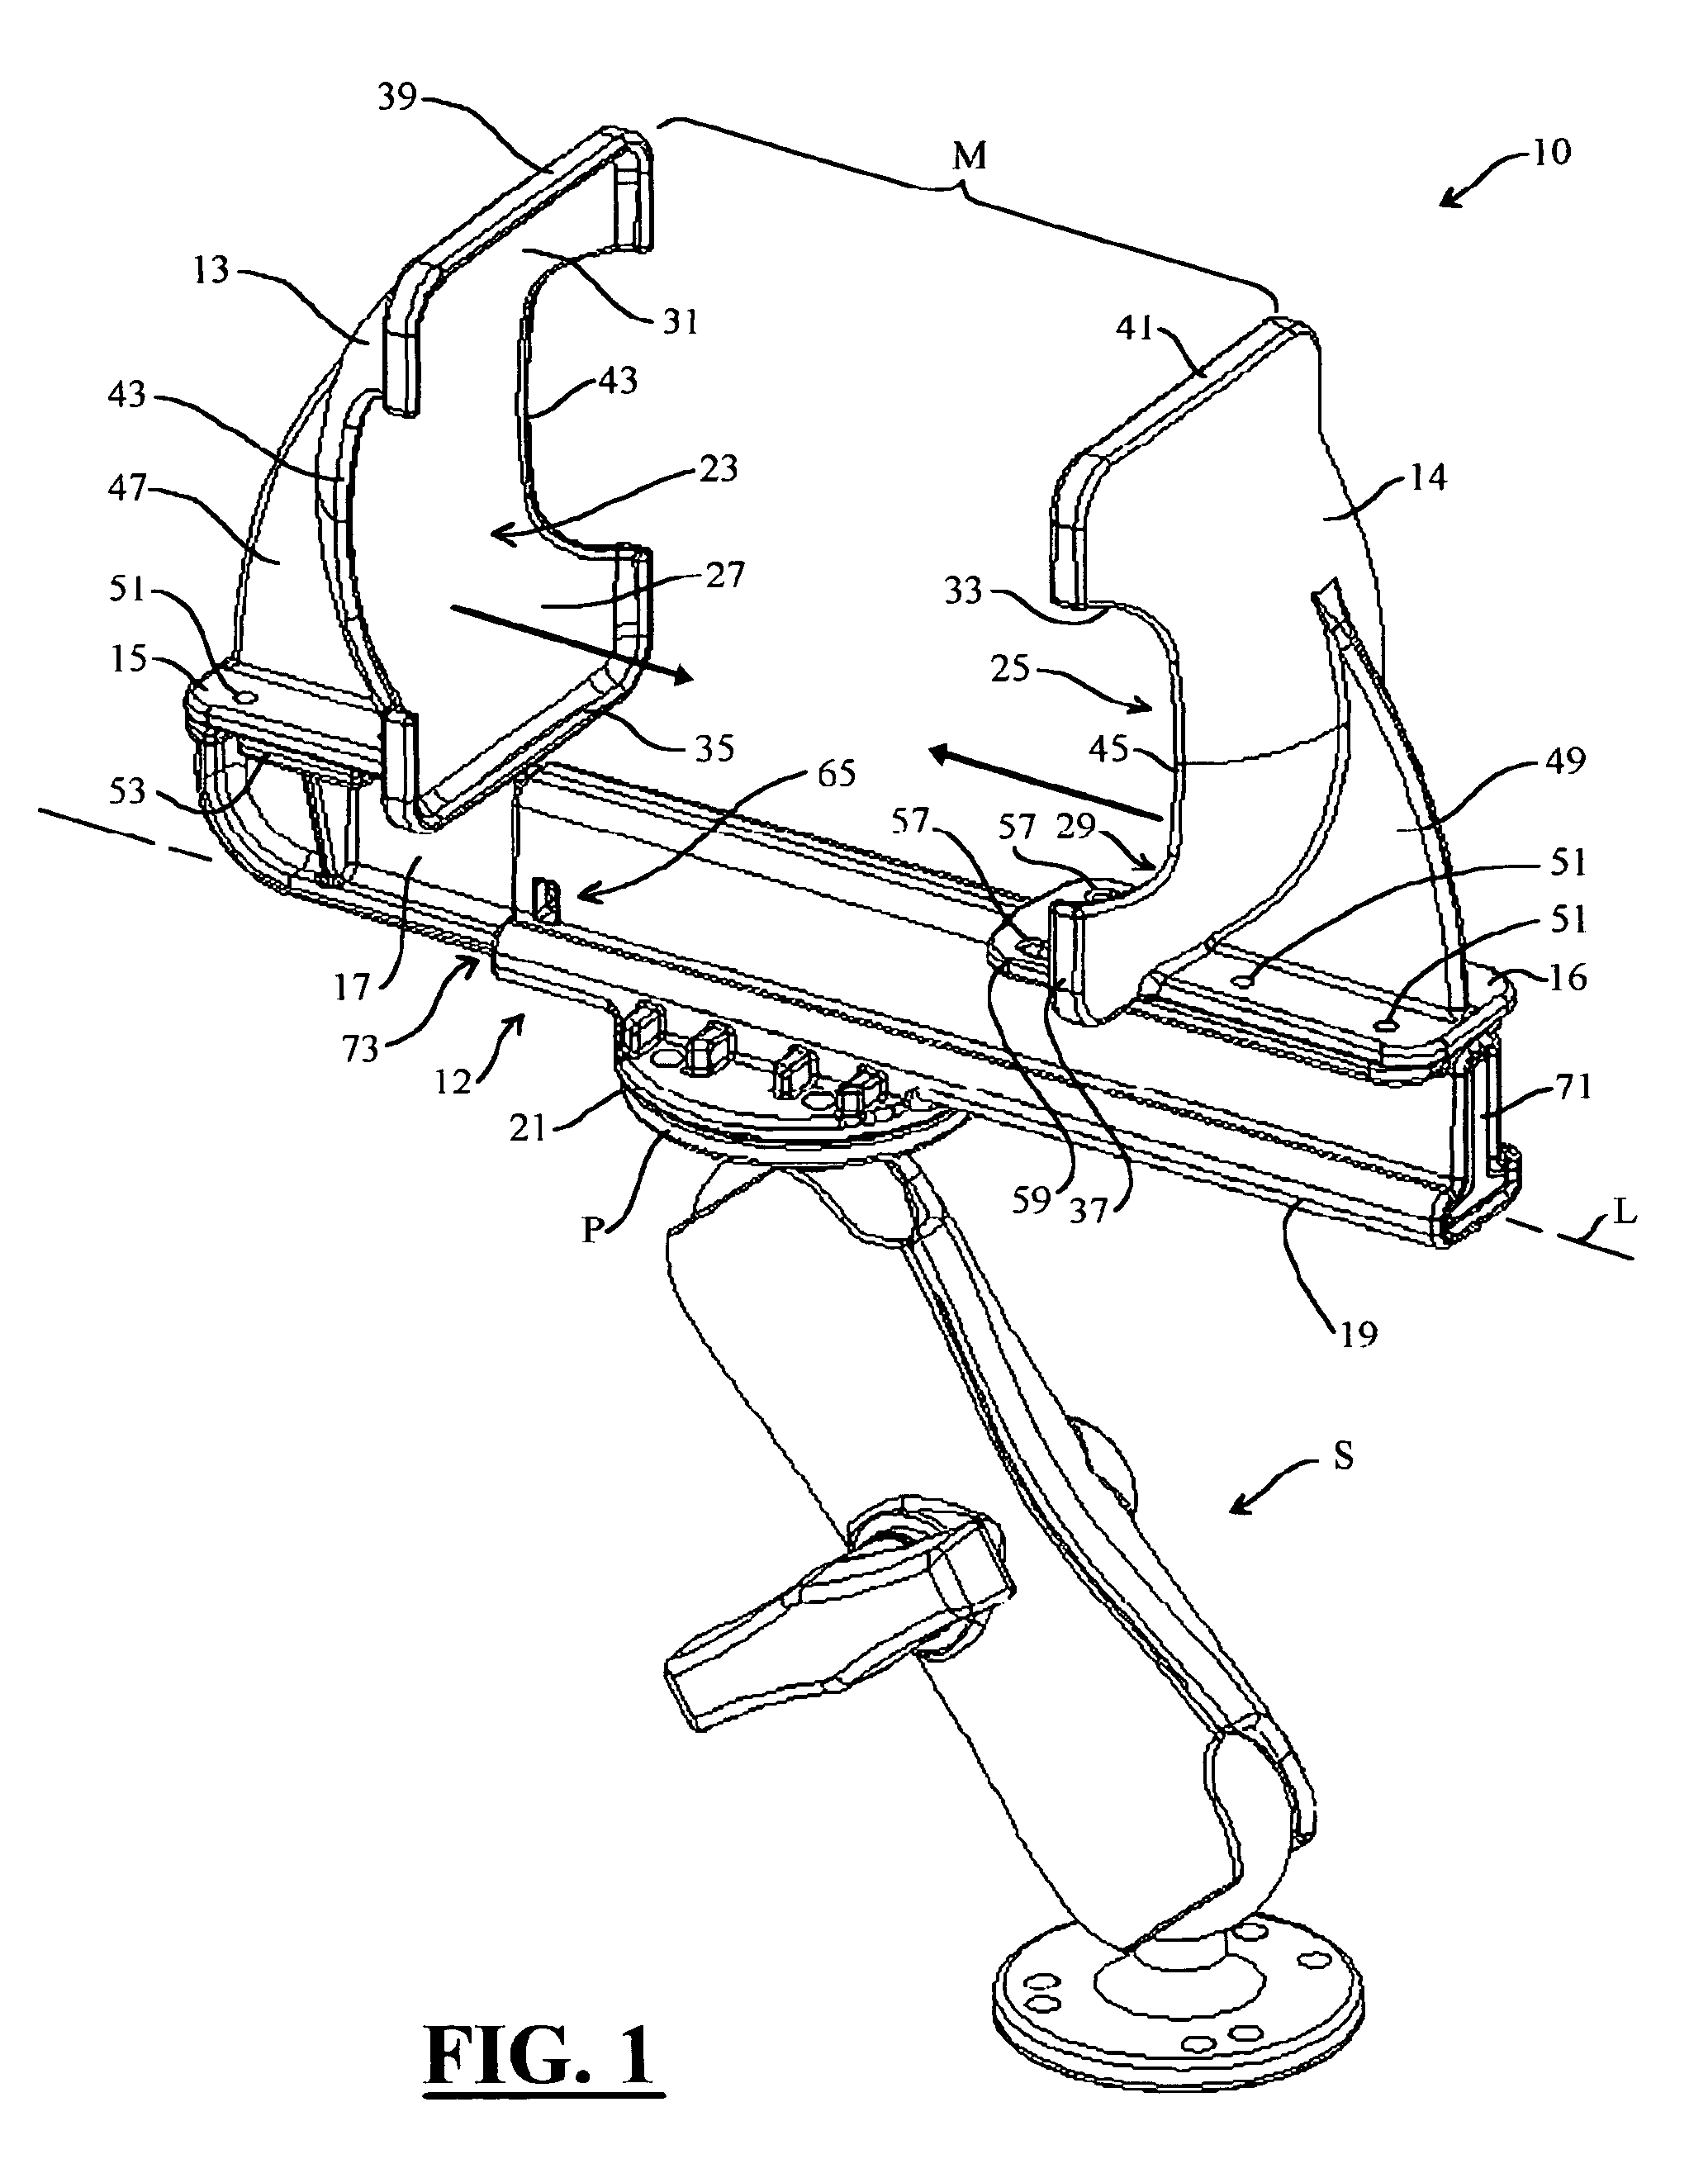 Quick draw cradle apparatus